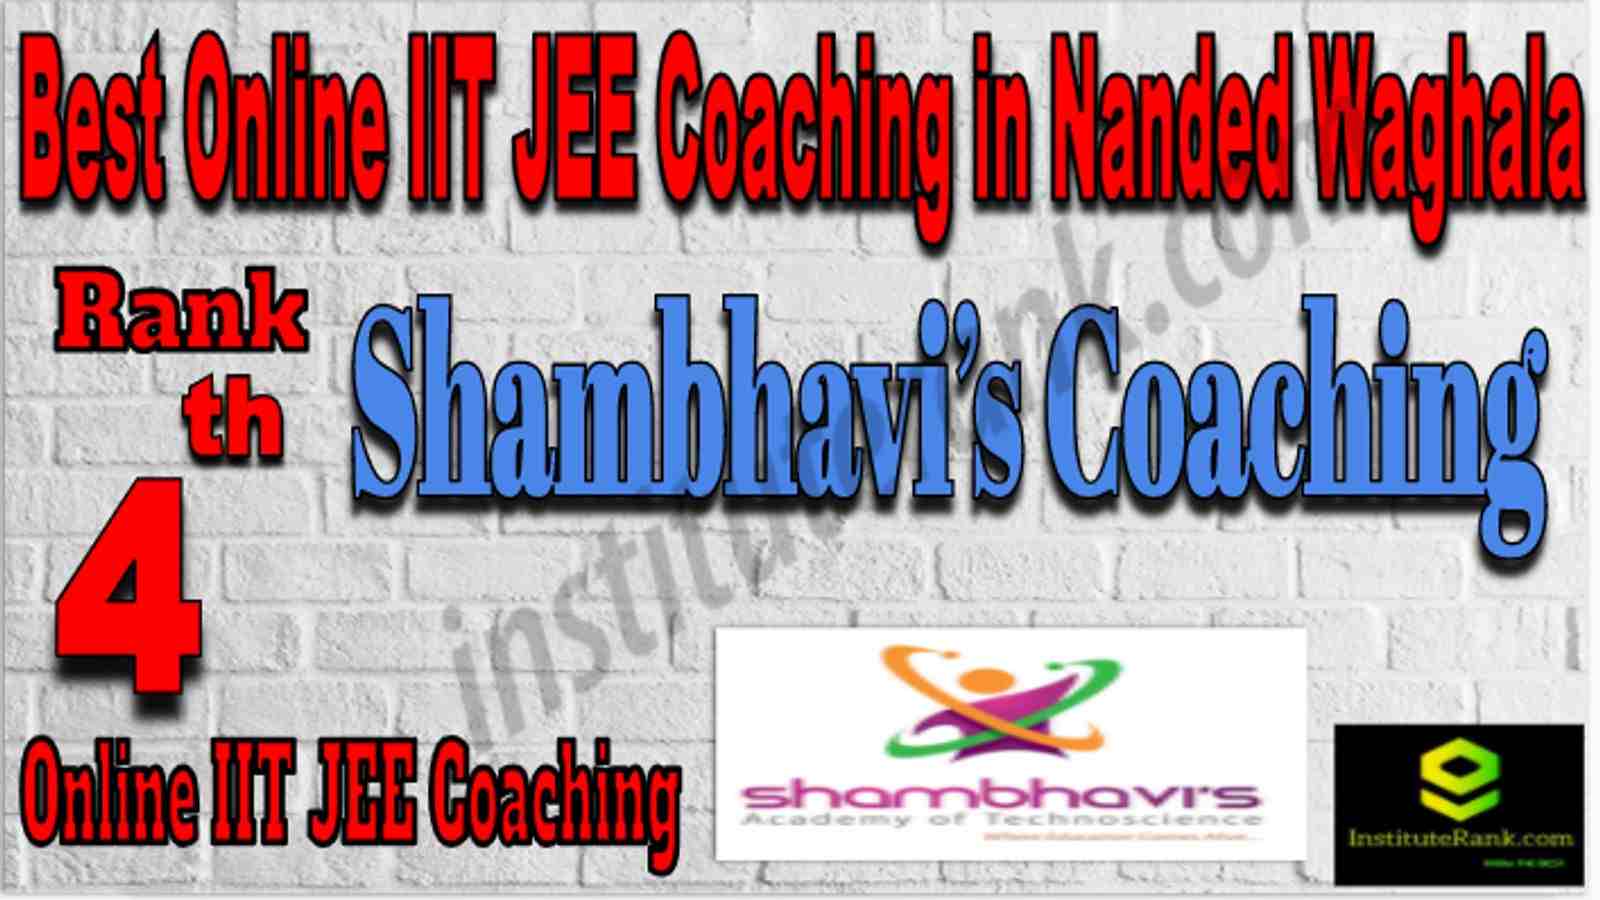 Rank 4 Best Online IIT JEE Coaching in Nanded Waghala